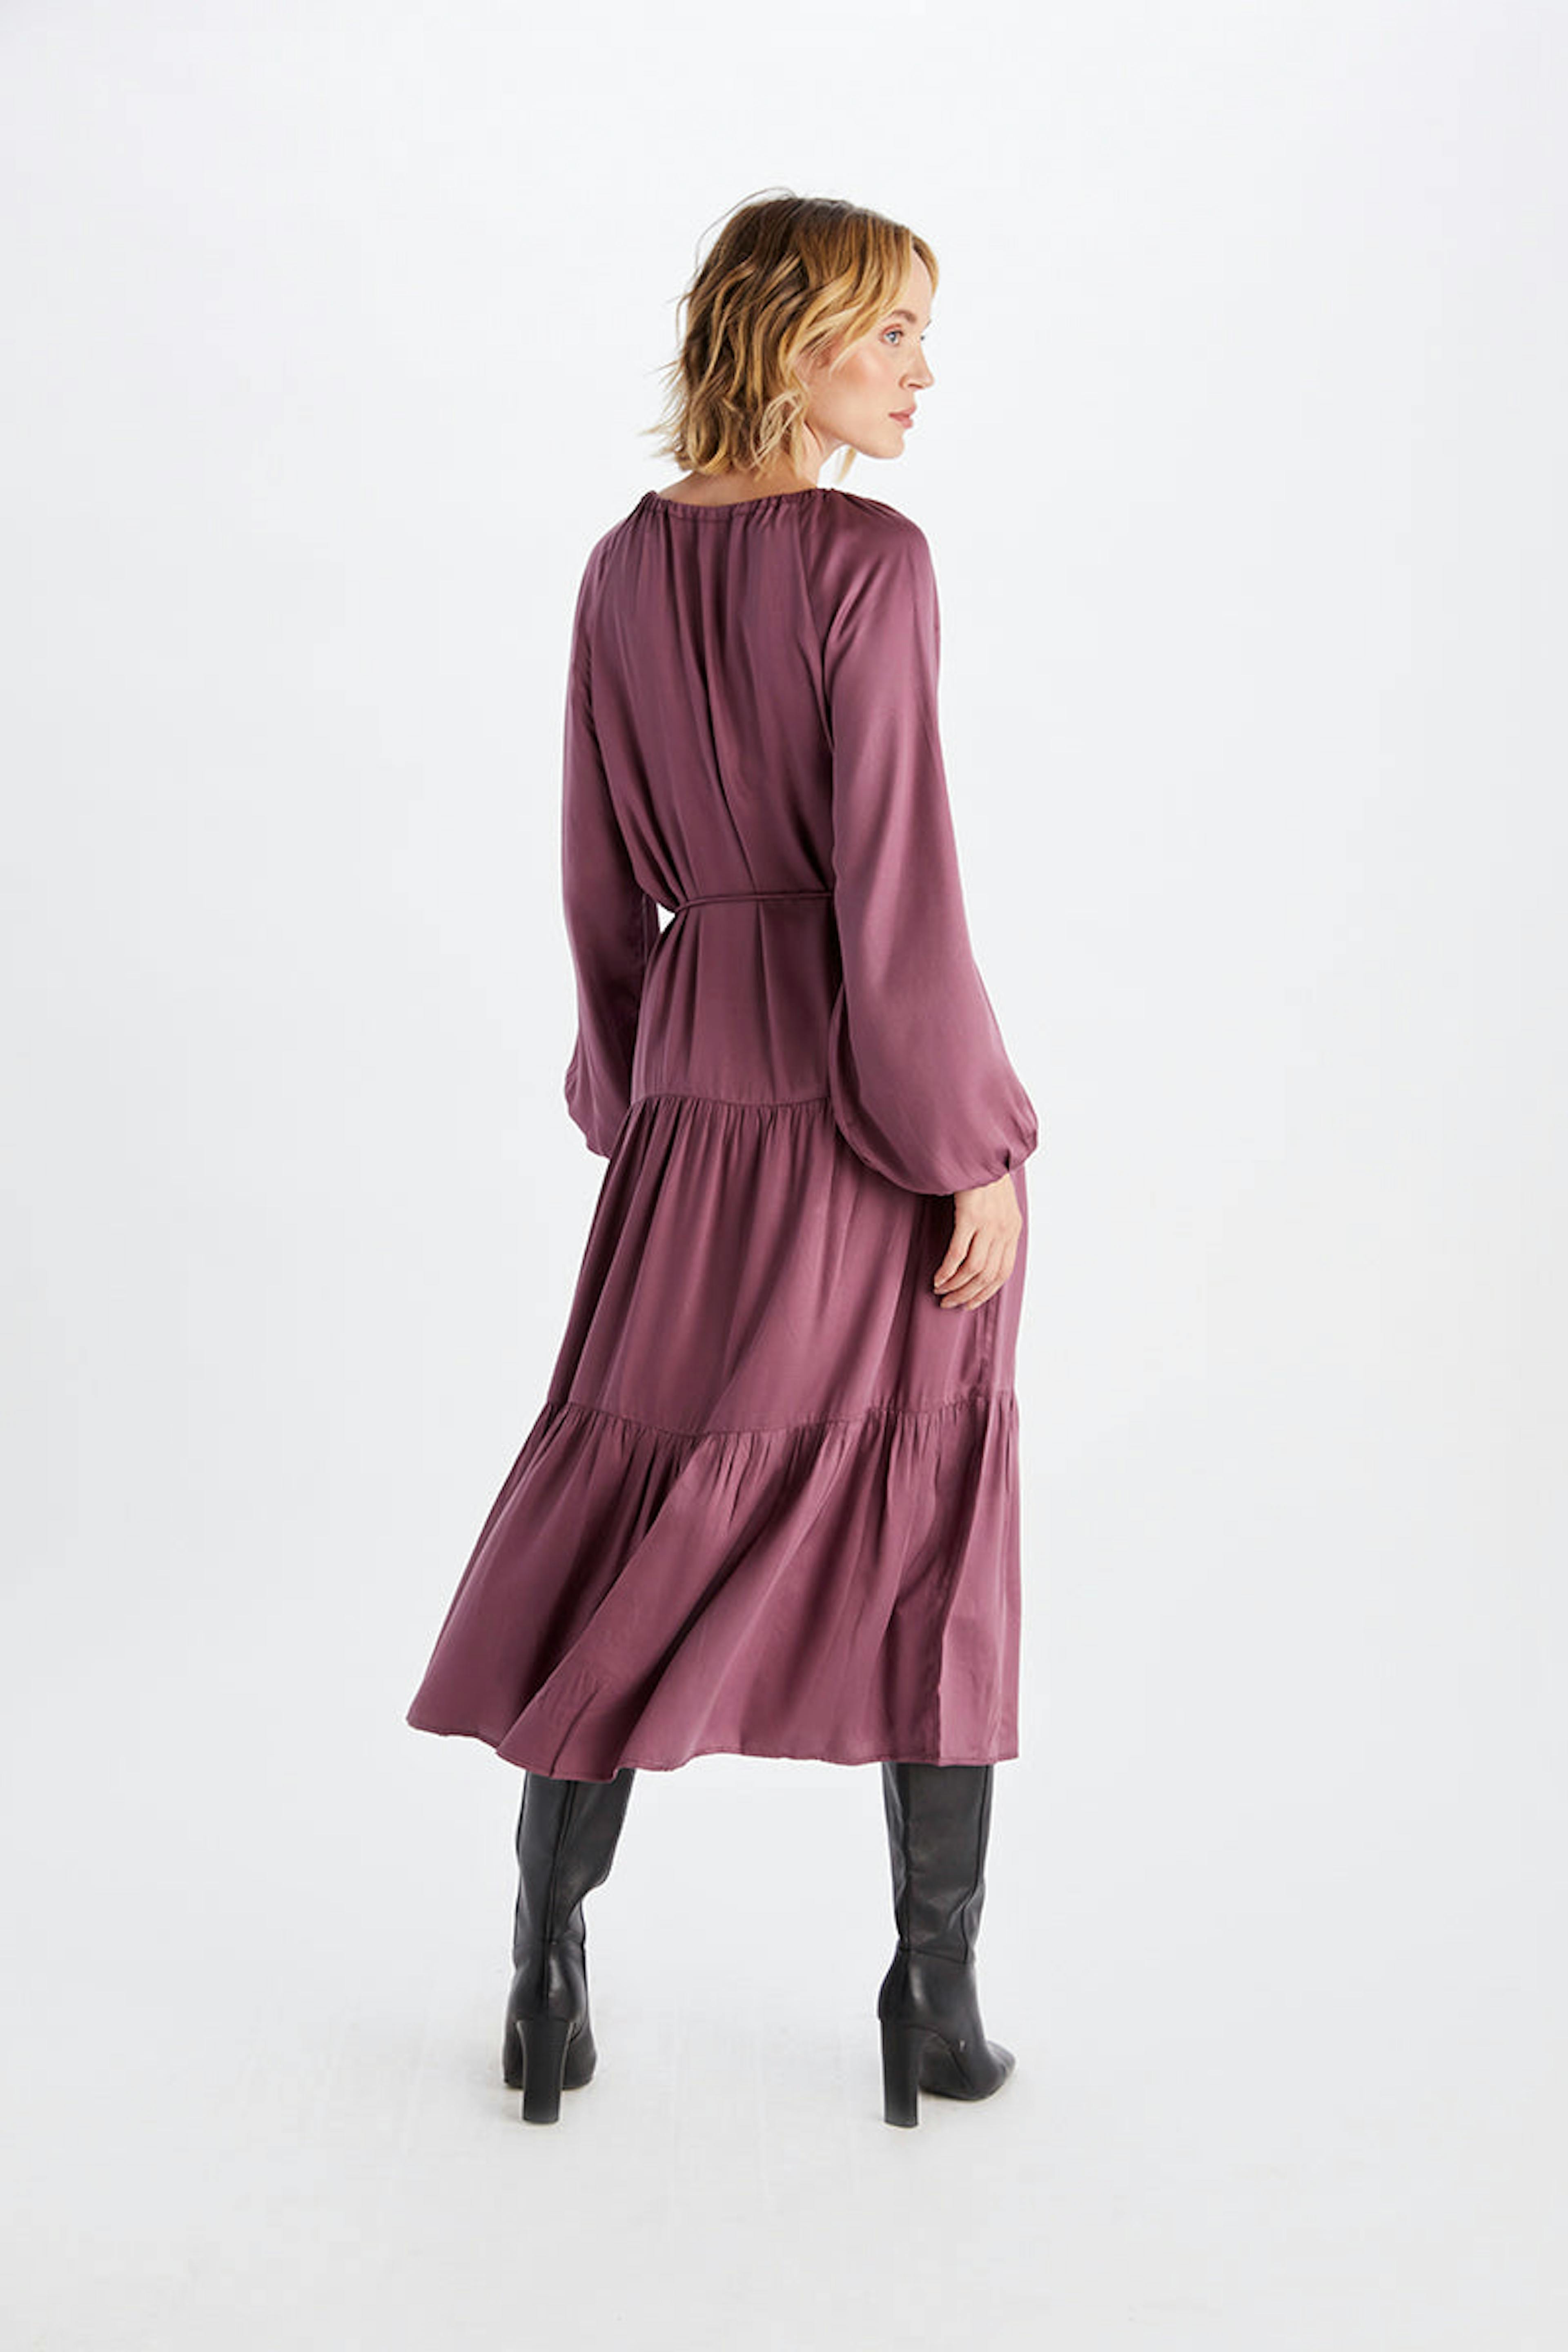 Alka | TENCEL™ Modal Dress | Khaki/Plum